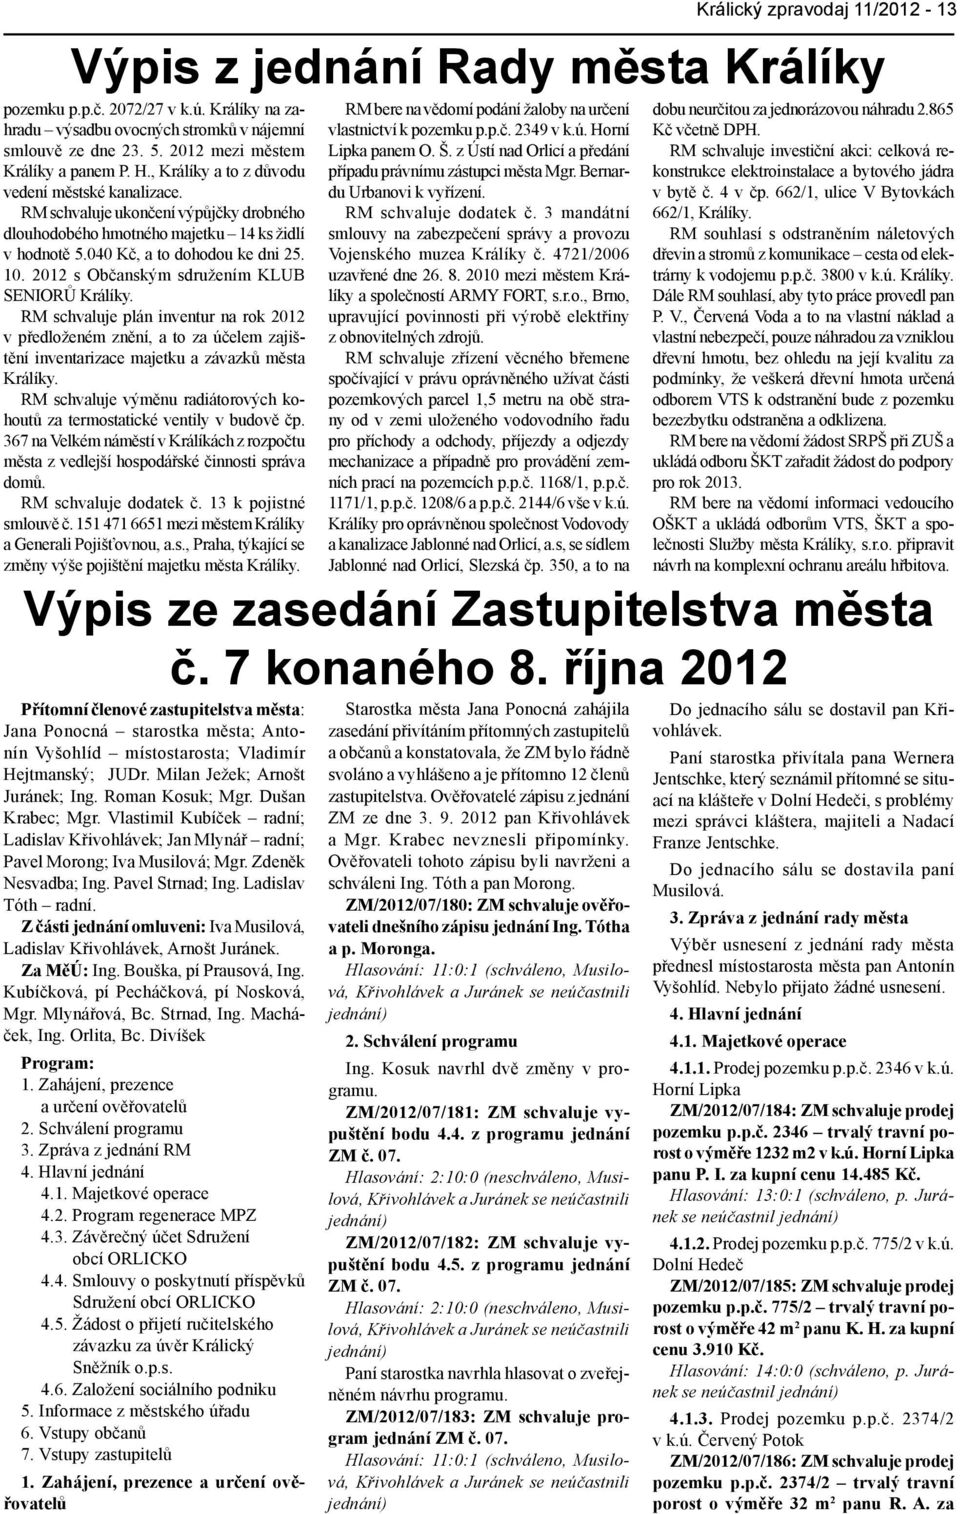 RM schvaluje plán inventur na rok 2012 v předloženém znění, a to za účelem zajištění inventarizace majetku a závazků města Králíky.